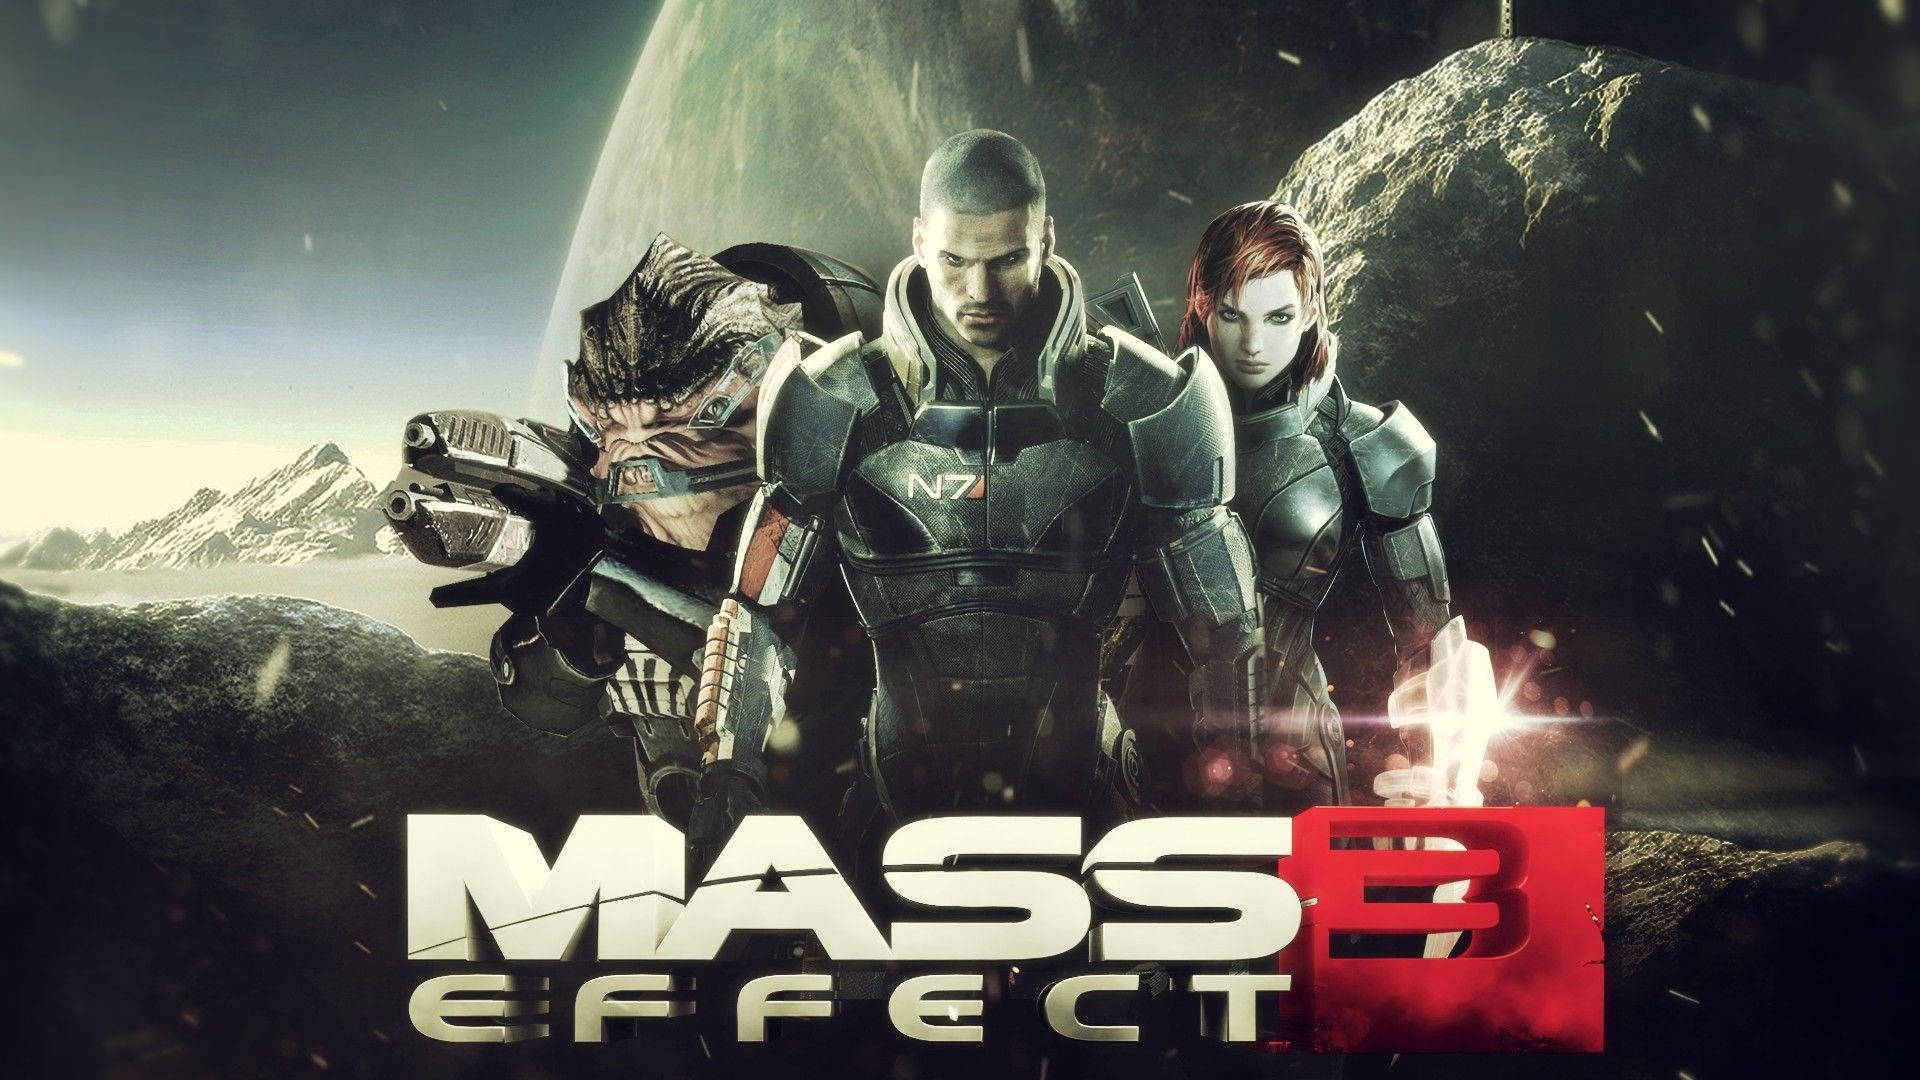 Mass Effect 3 Video Game Poster Wallpaper